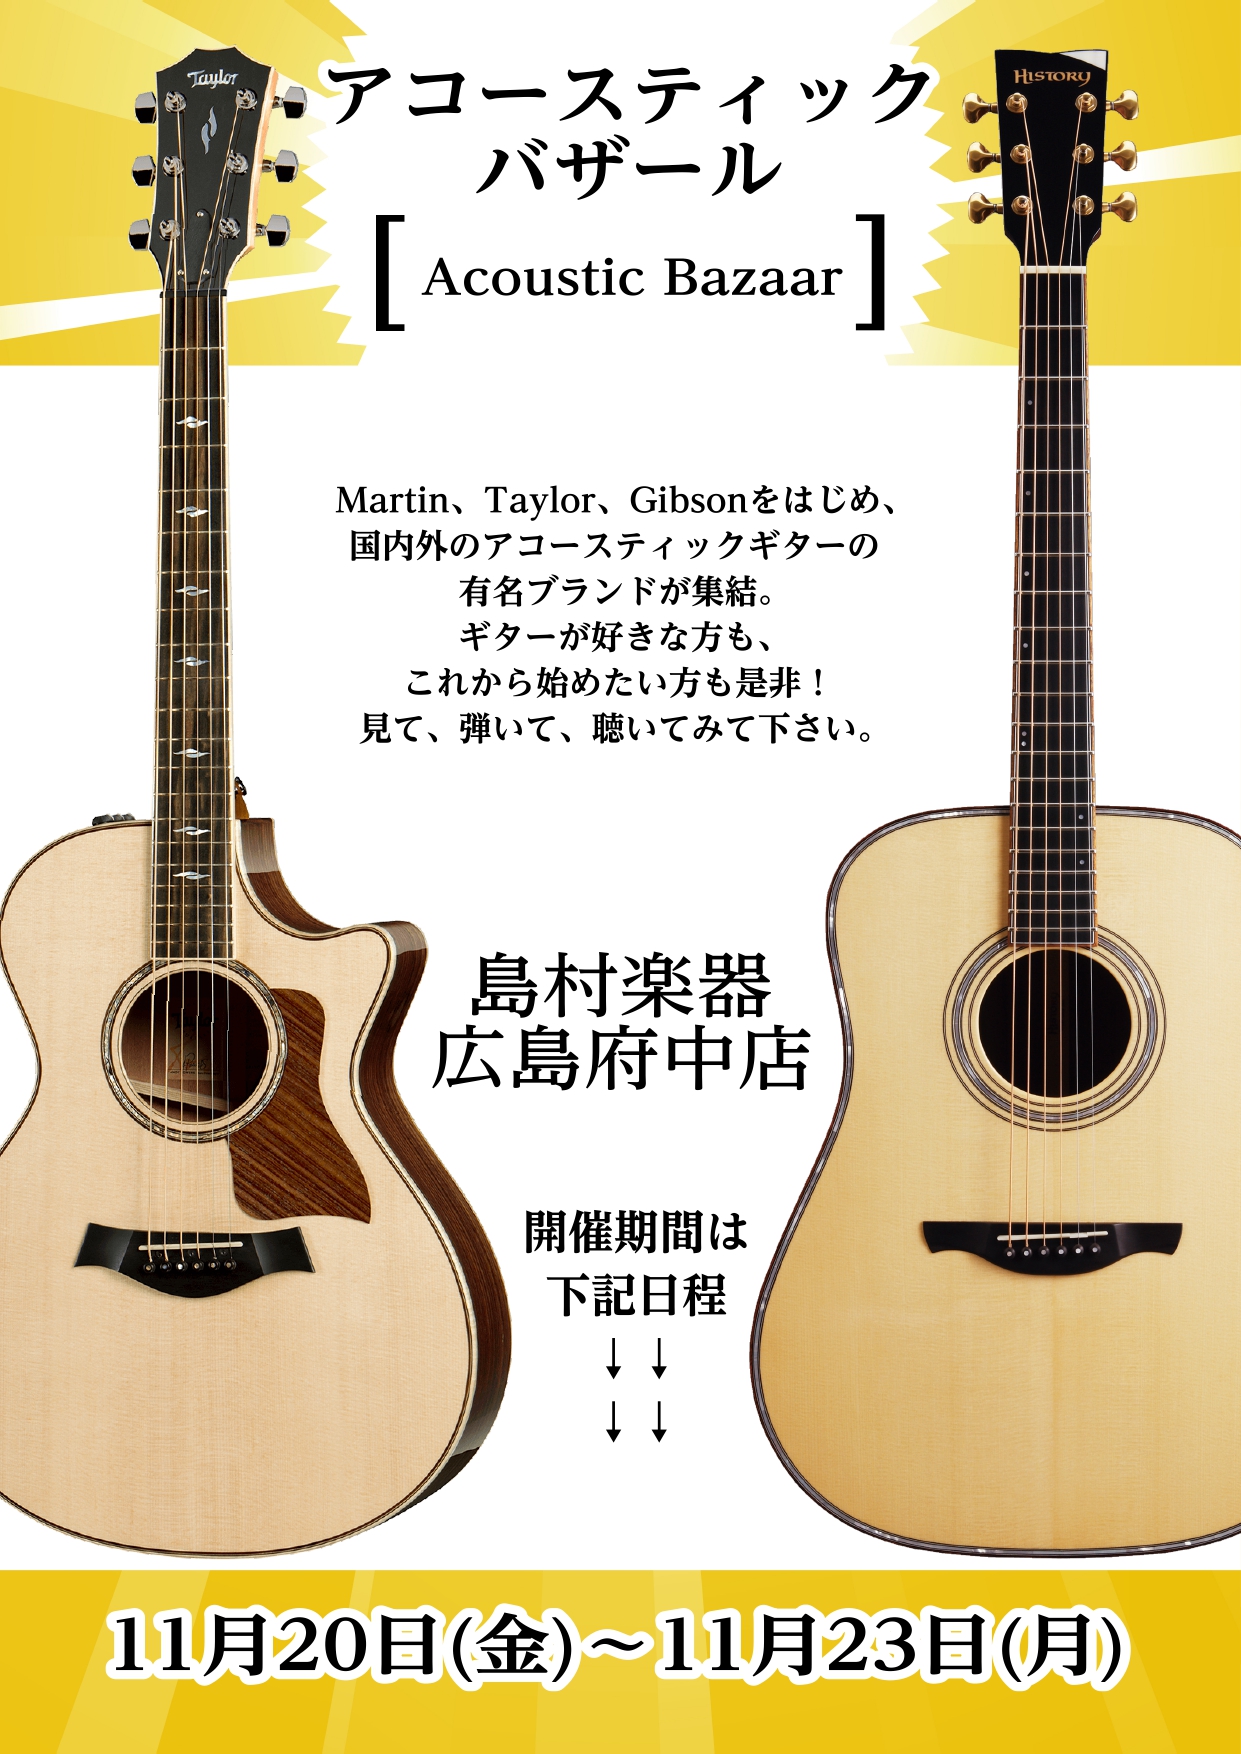 *アコースティックギターご購入はぜひこの機会に！ こんにちは！広島府中店ギター担当長野です！！11/20（金）から11/23（月）の期間中、「広島府中店　アコースティックバザール」を開催致します！！ MartinやK.yairiなど、この期間でしかお目にかかれない貴重なギターを多数取り揃えました。] […]